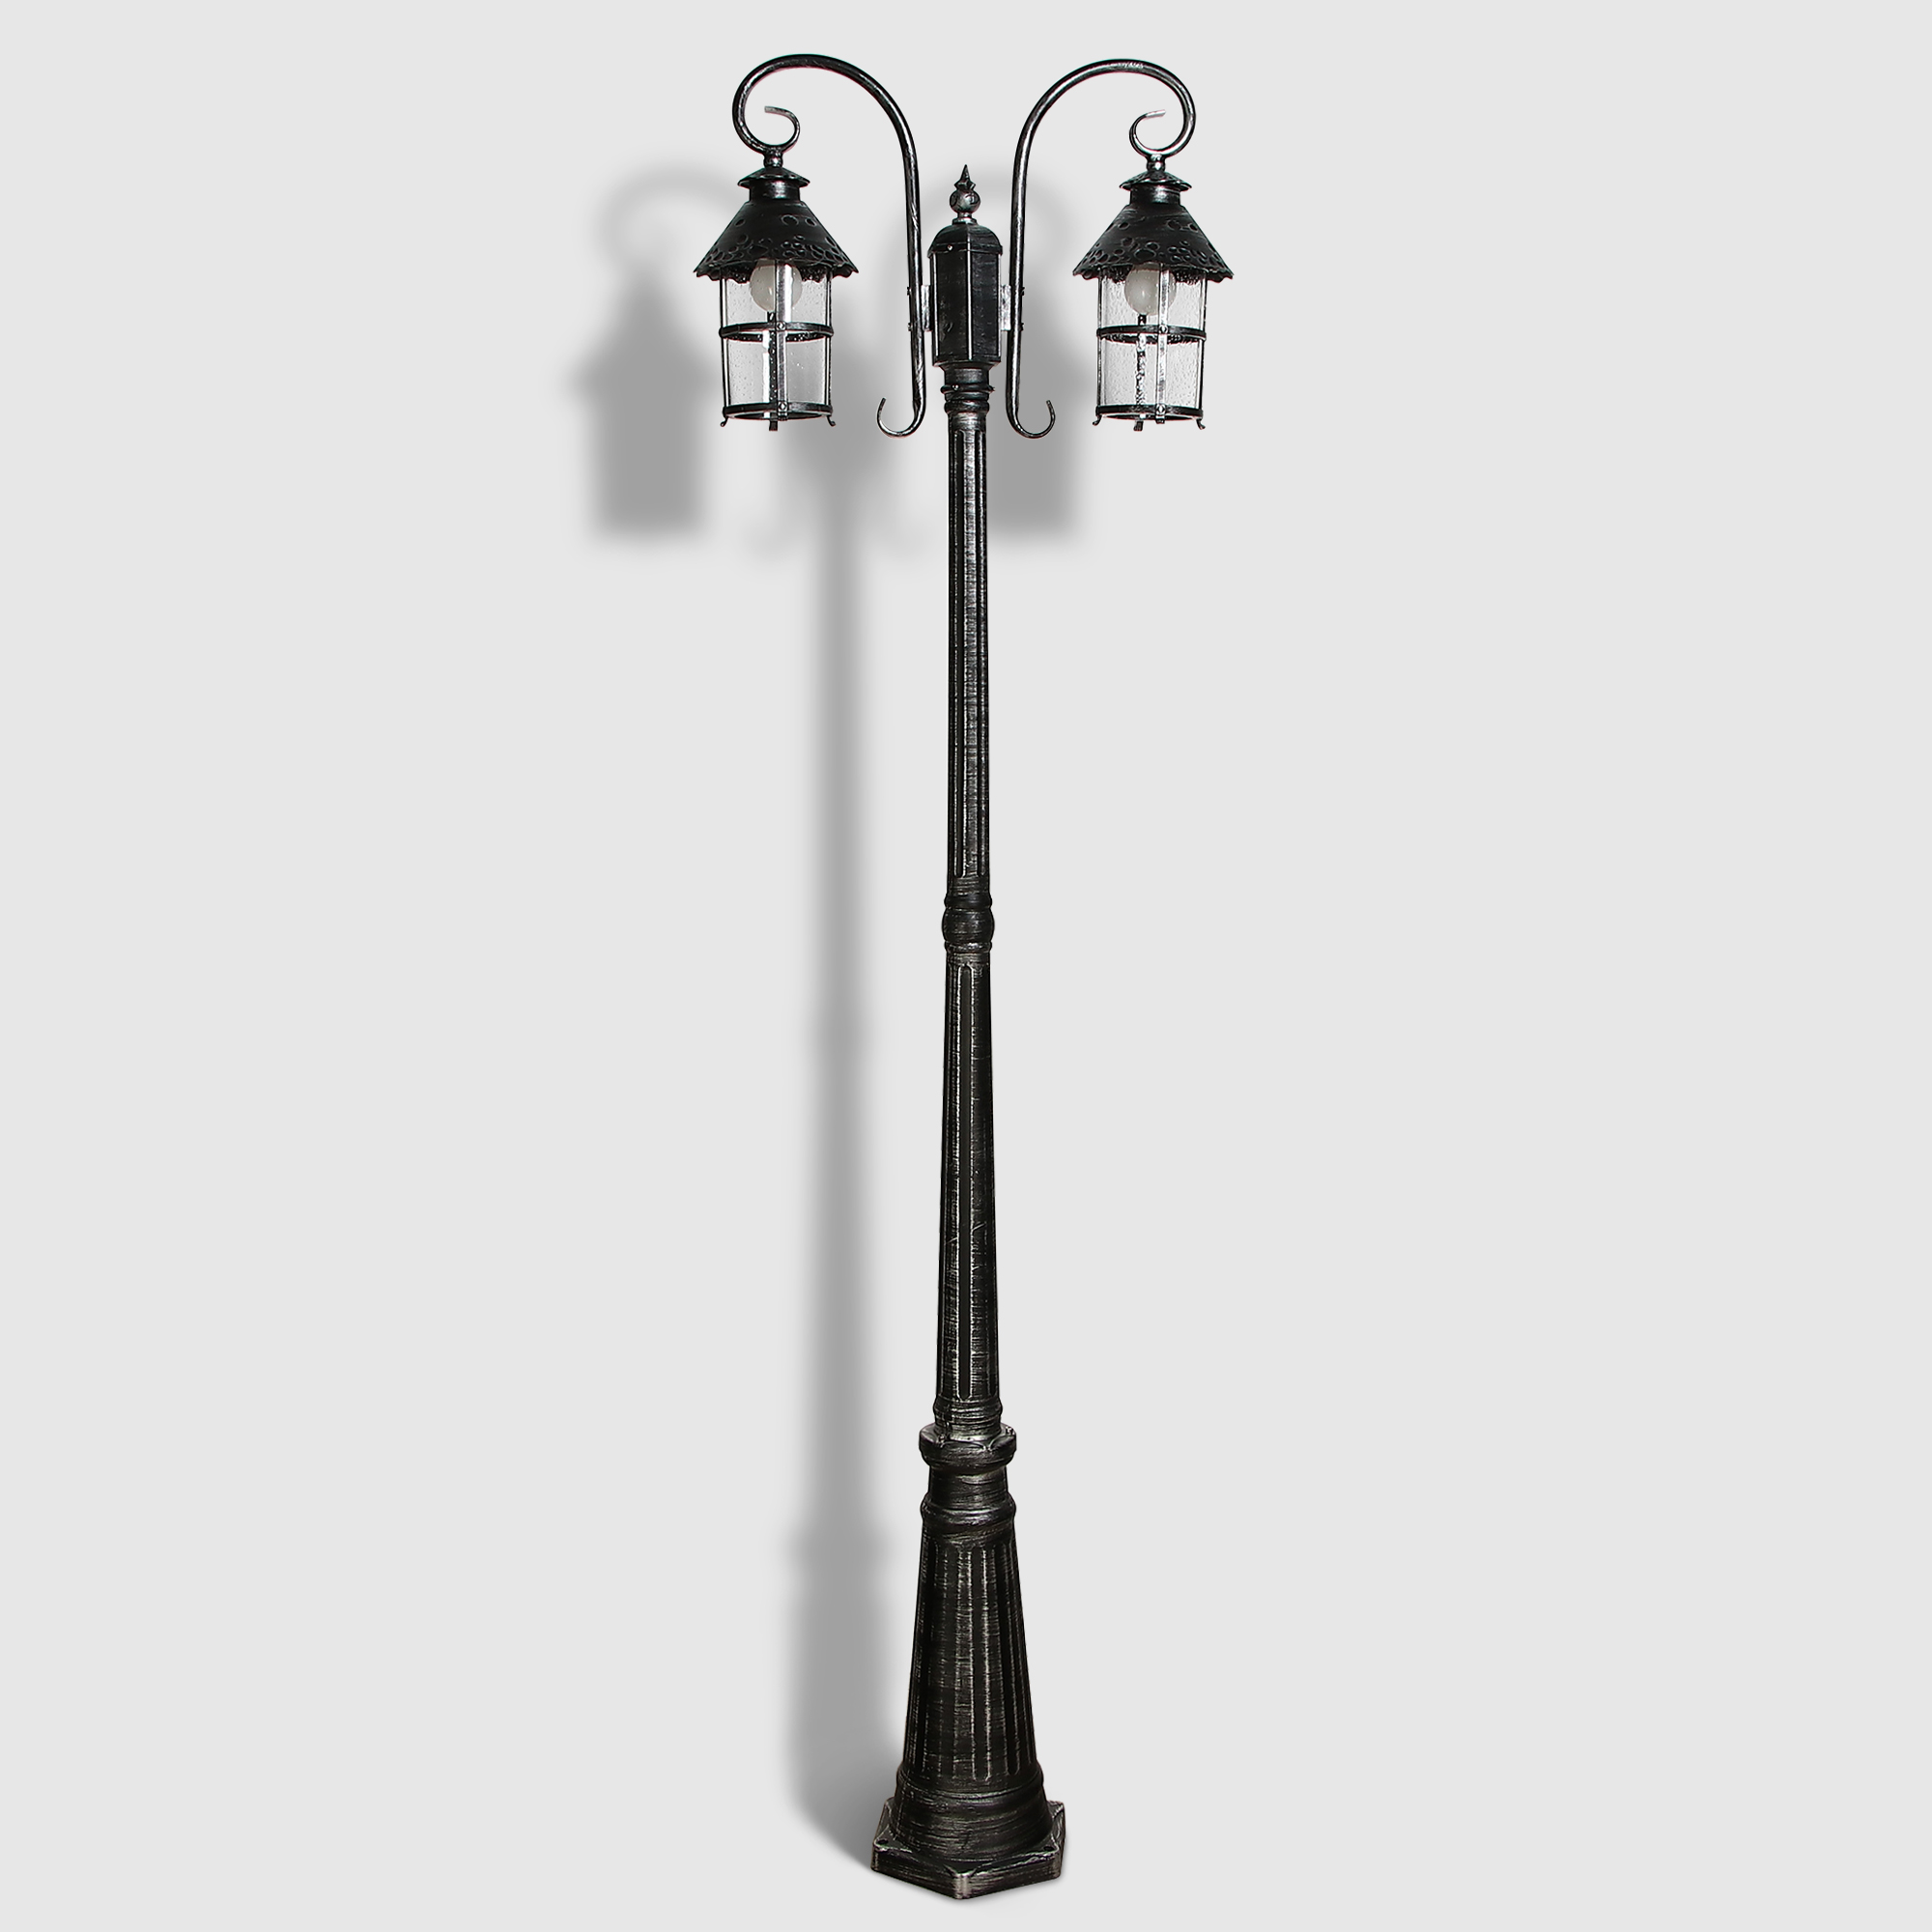 Светильник садовый Amber Lamp 9732-POLE 10 напольный IP44 E27 100Вт, черное серебро, цвет черное серебро, прозрачный - фото 1